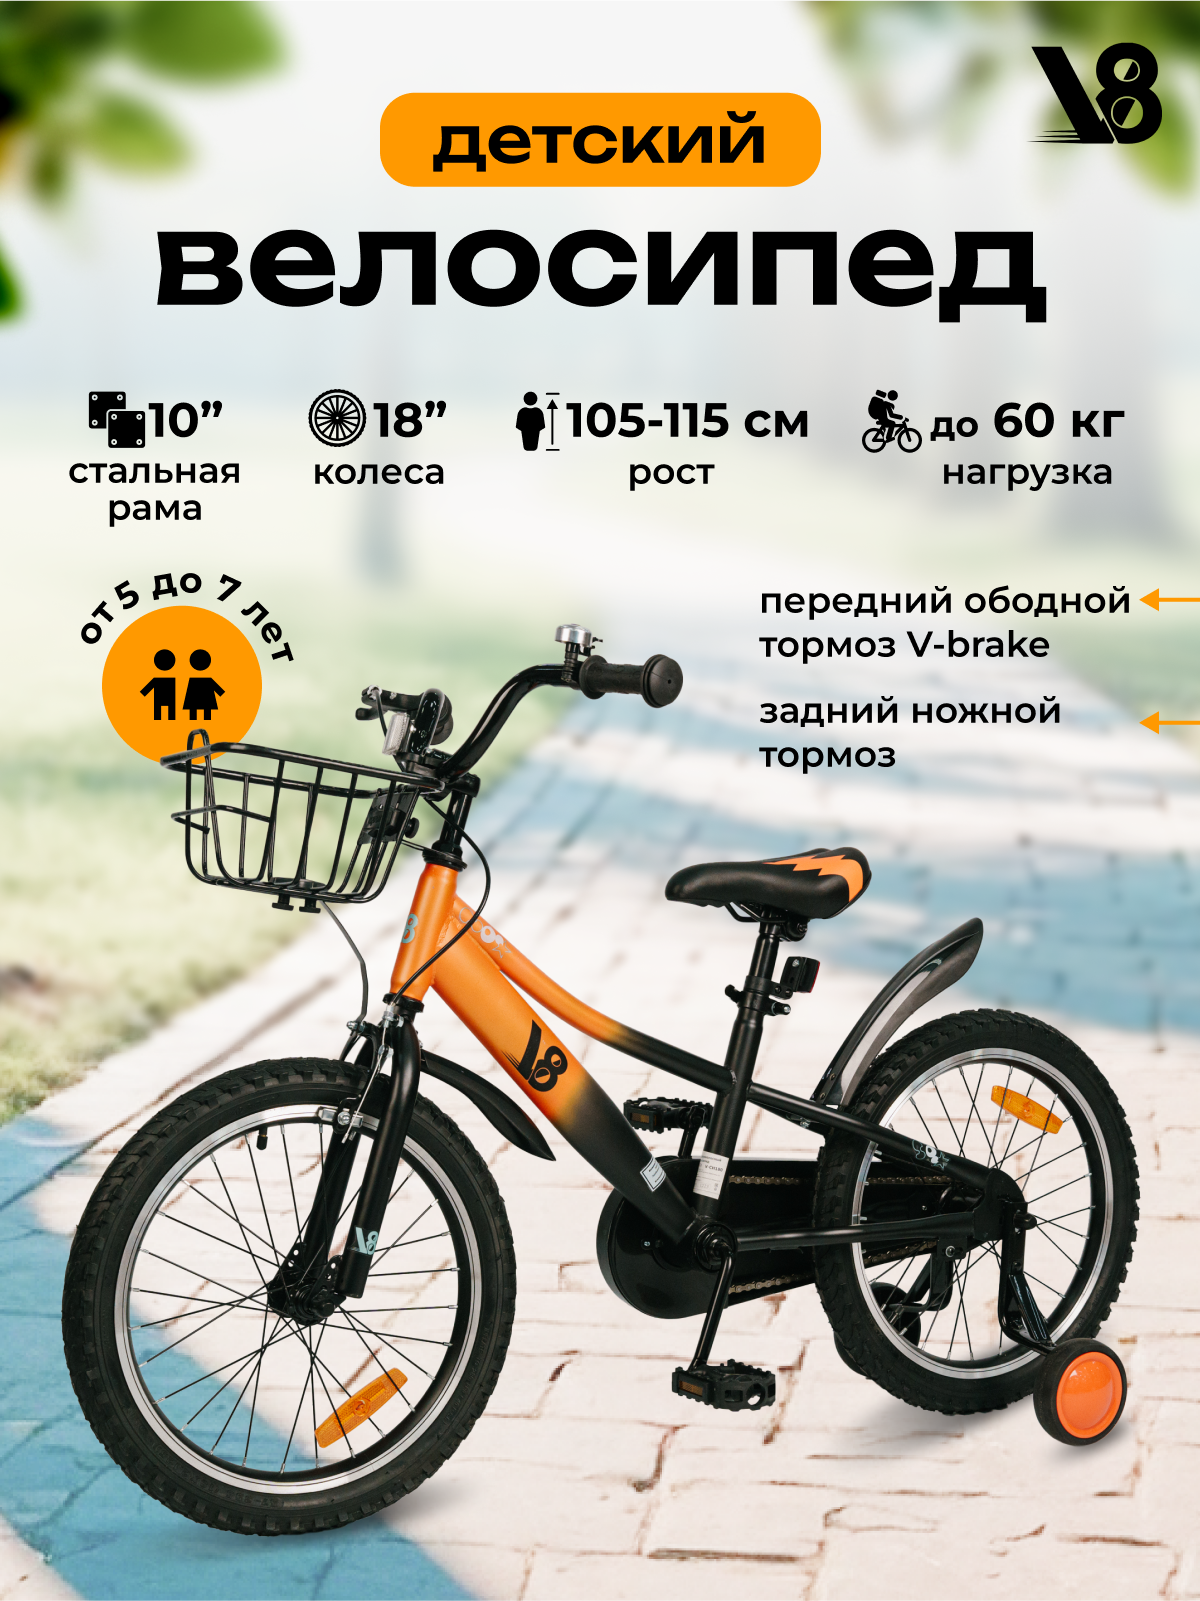 Велосипед детский 18" V8 V-CH180 зеленый, оранжевый, для мальчиков и девочек от 5-7 лет на рост 105-115 см